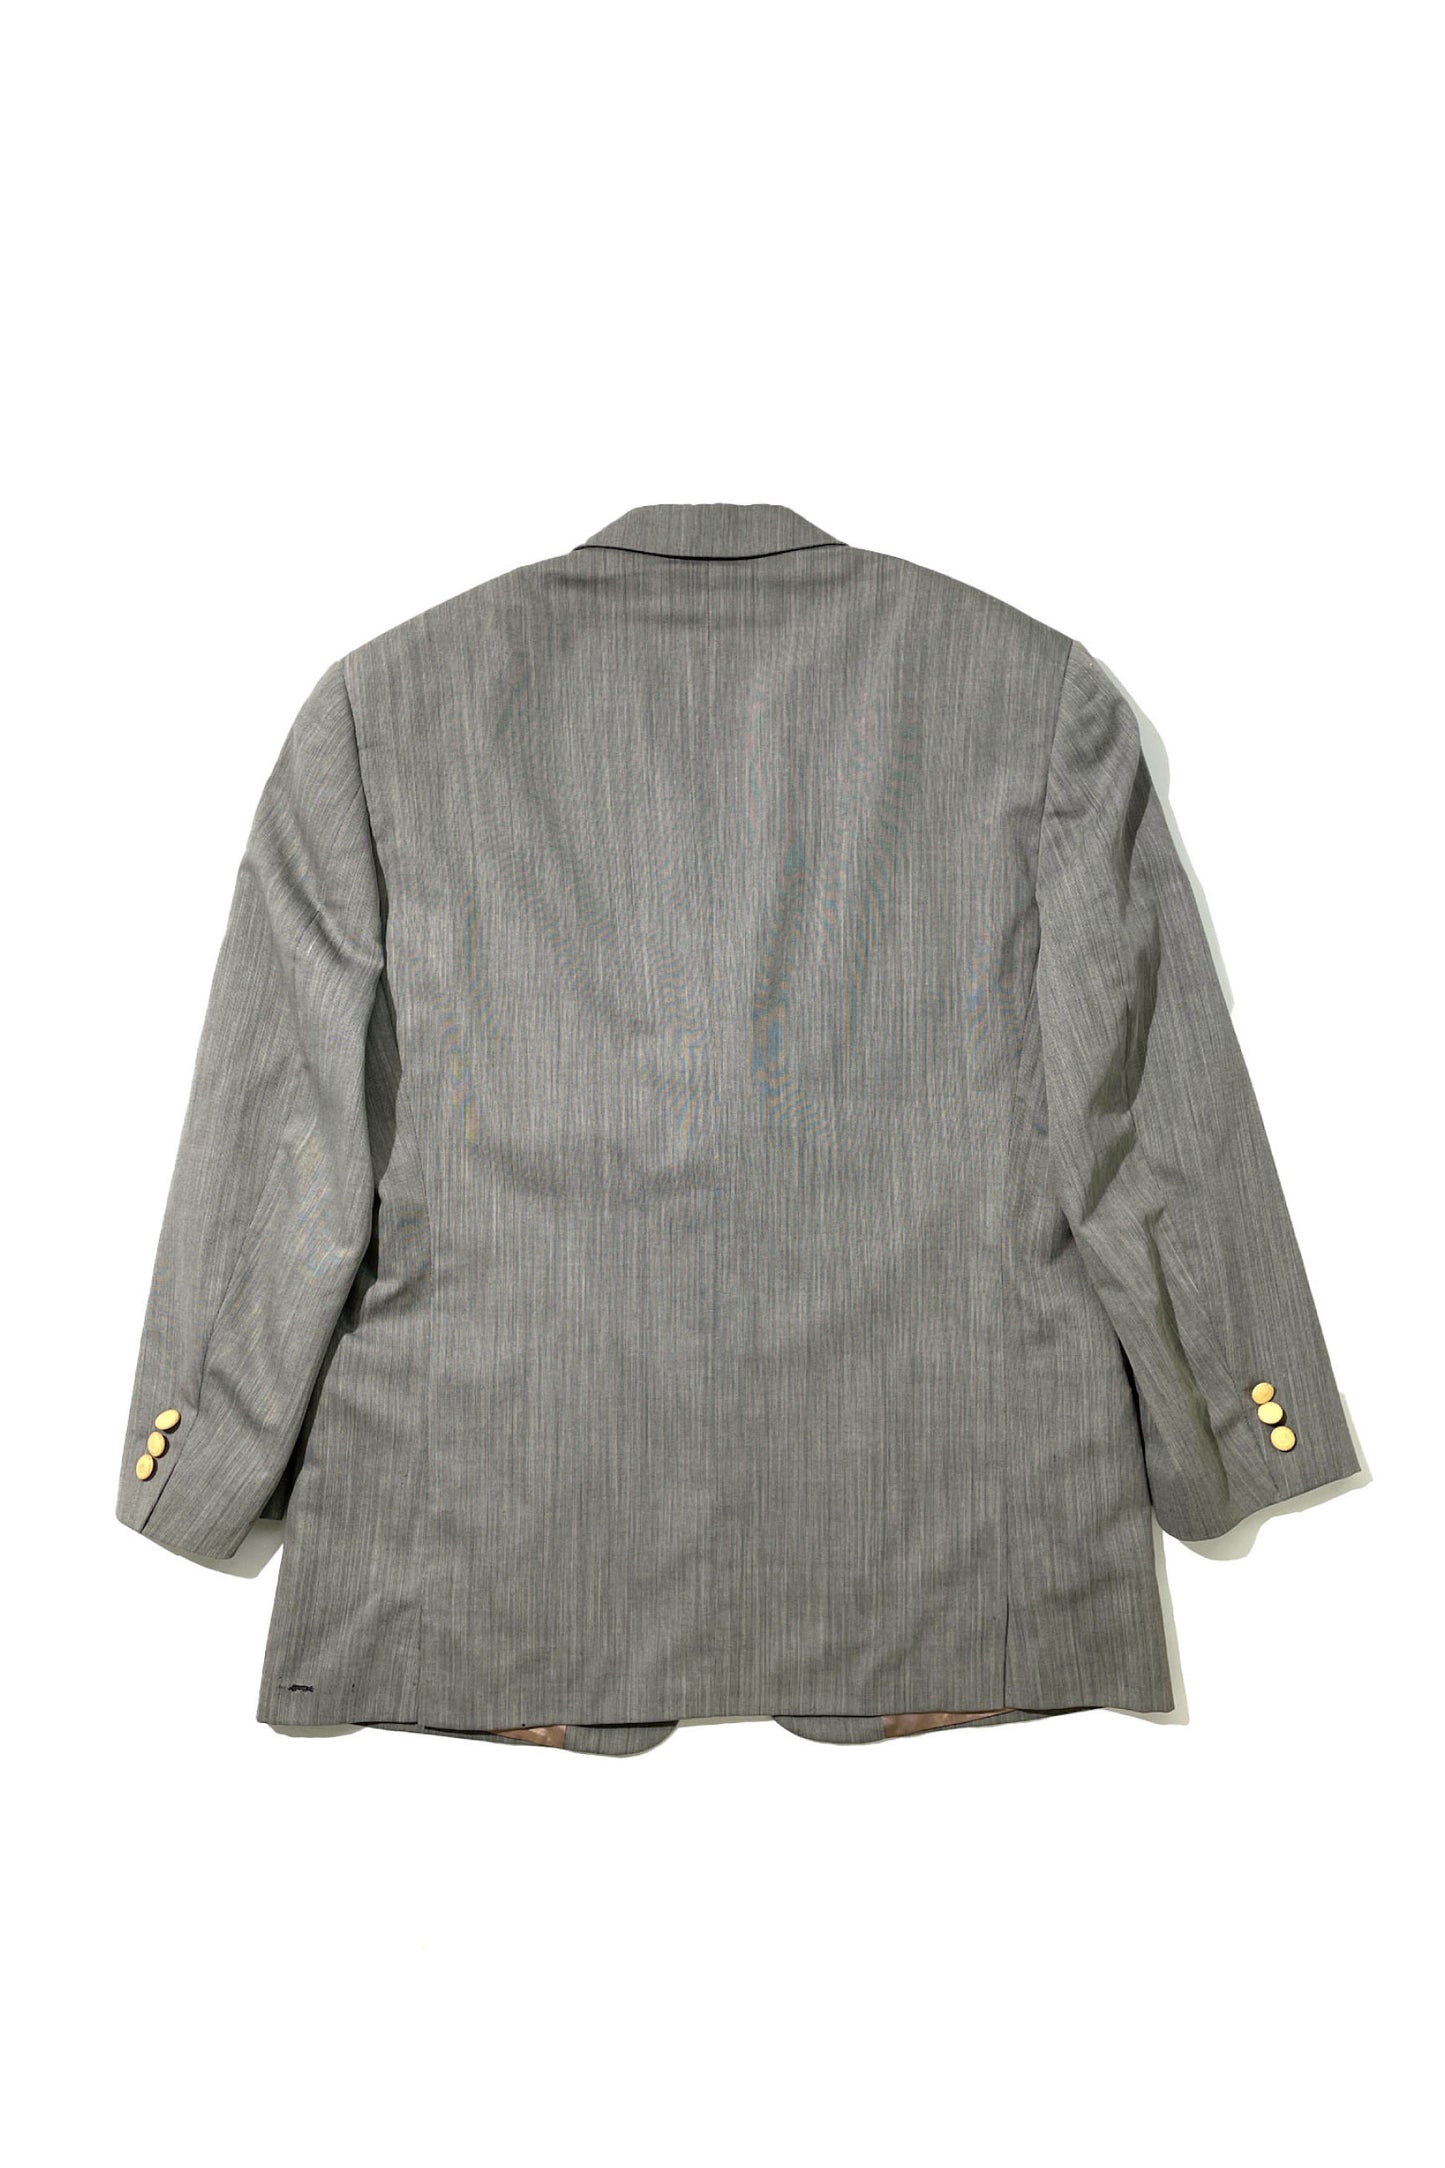 90's gray jacket